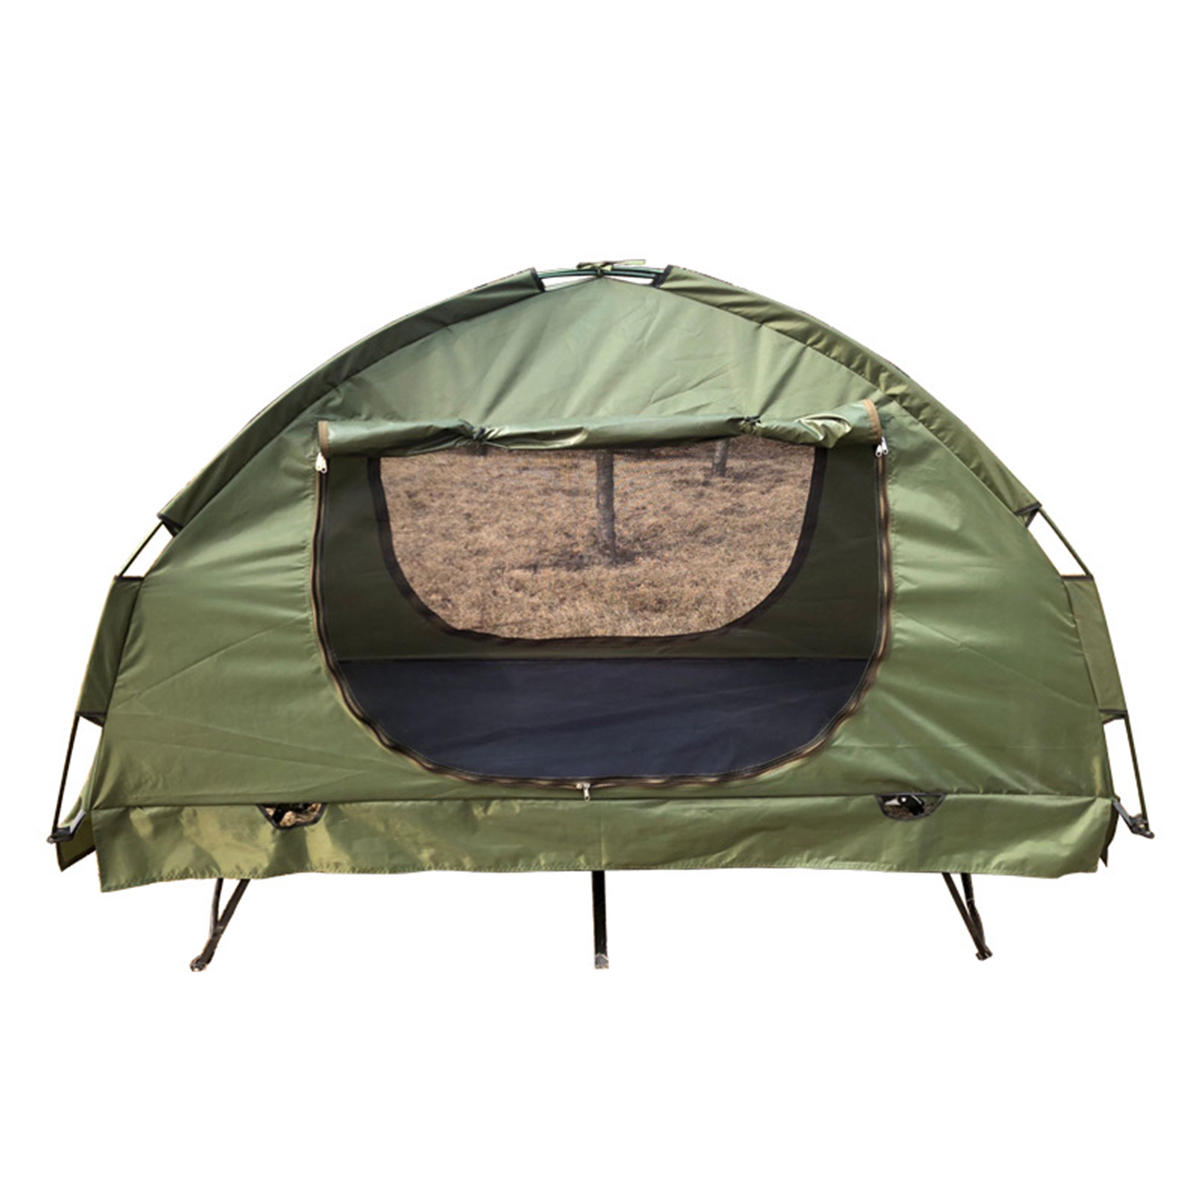 Outdoor 1 persoon eenpersoons off-grond vouwbed kinderbed tent waterdicht luifel zonnescherm camping wandelen